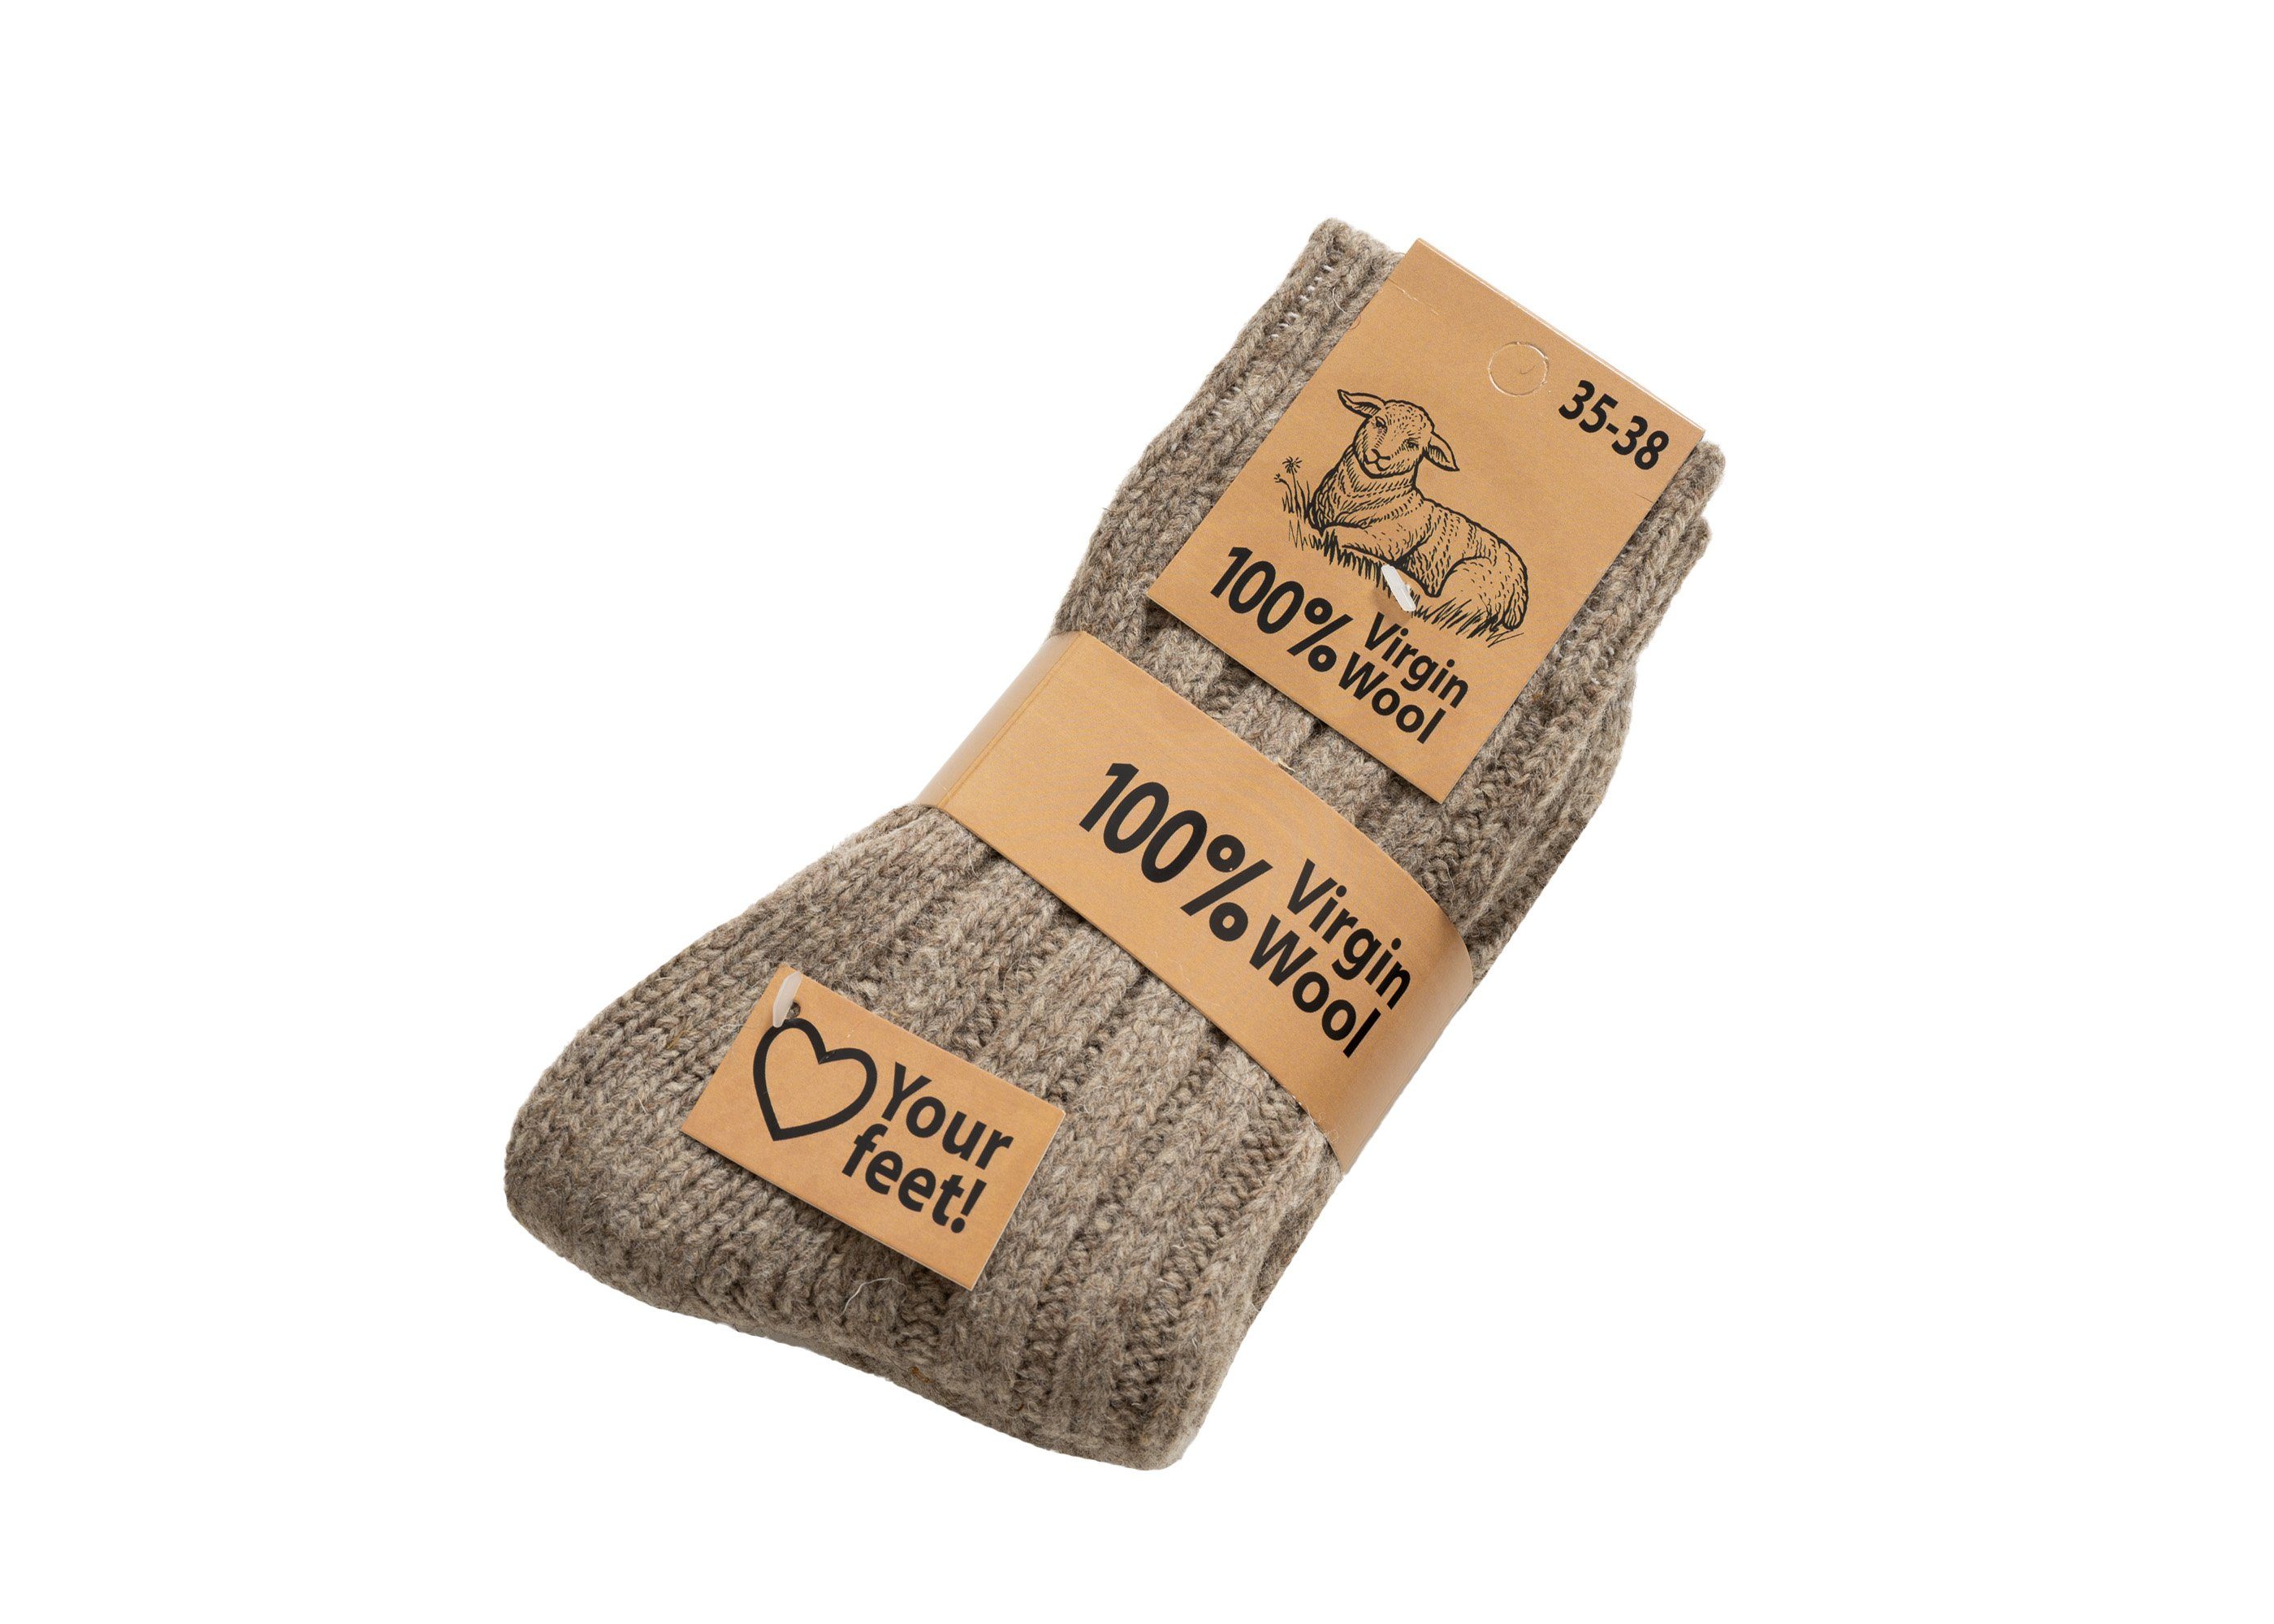 Wollsocken Wollsocken mit 100% Dicke und Pack HomeOfSocks warme 2er Socken Wolle aus Wollanteil 100% Taupe (Schurwolle)